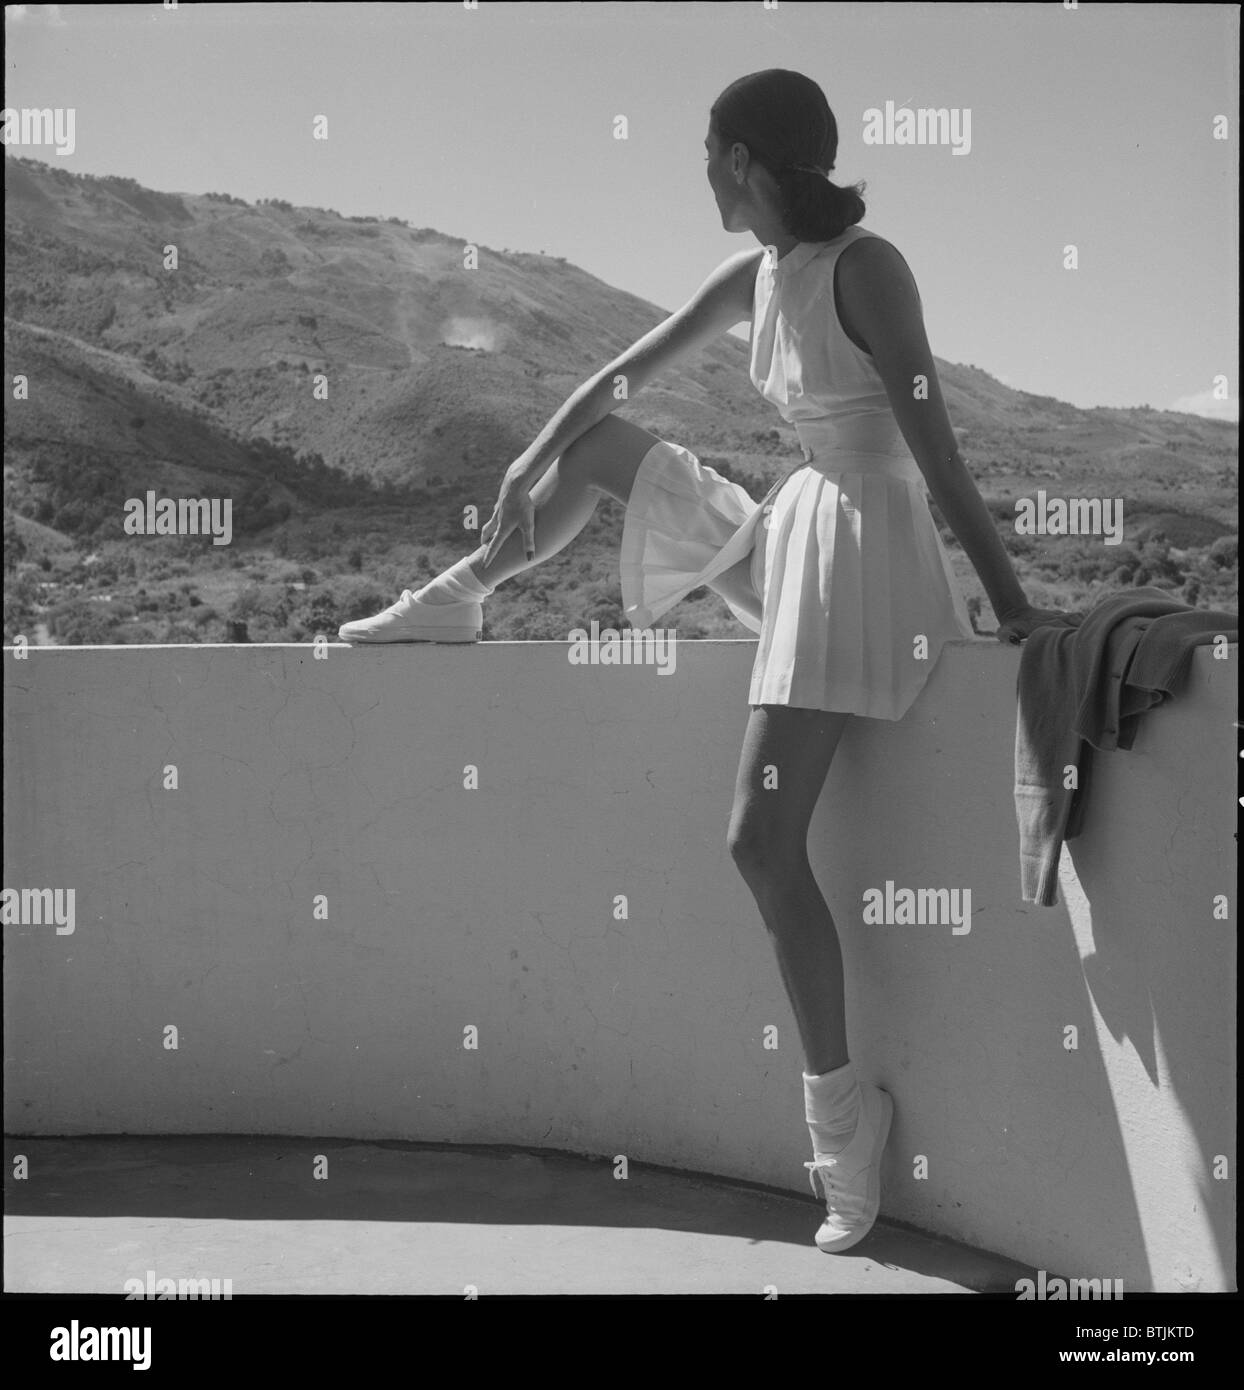 Frau trägt Tennis-Outfit, auf Wand, mit einem Bein auf Wand, sitzend mit Blick auf die Berge hinter ihr, Foto von Toni Frissell, 1947. Stockfoto